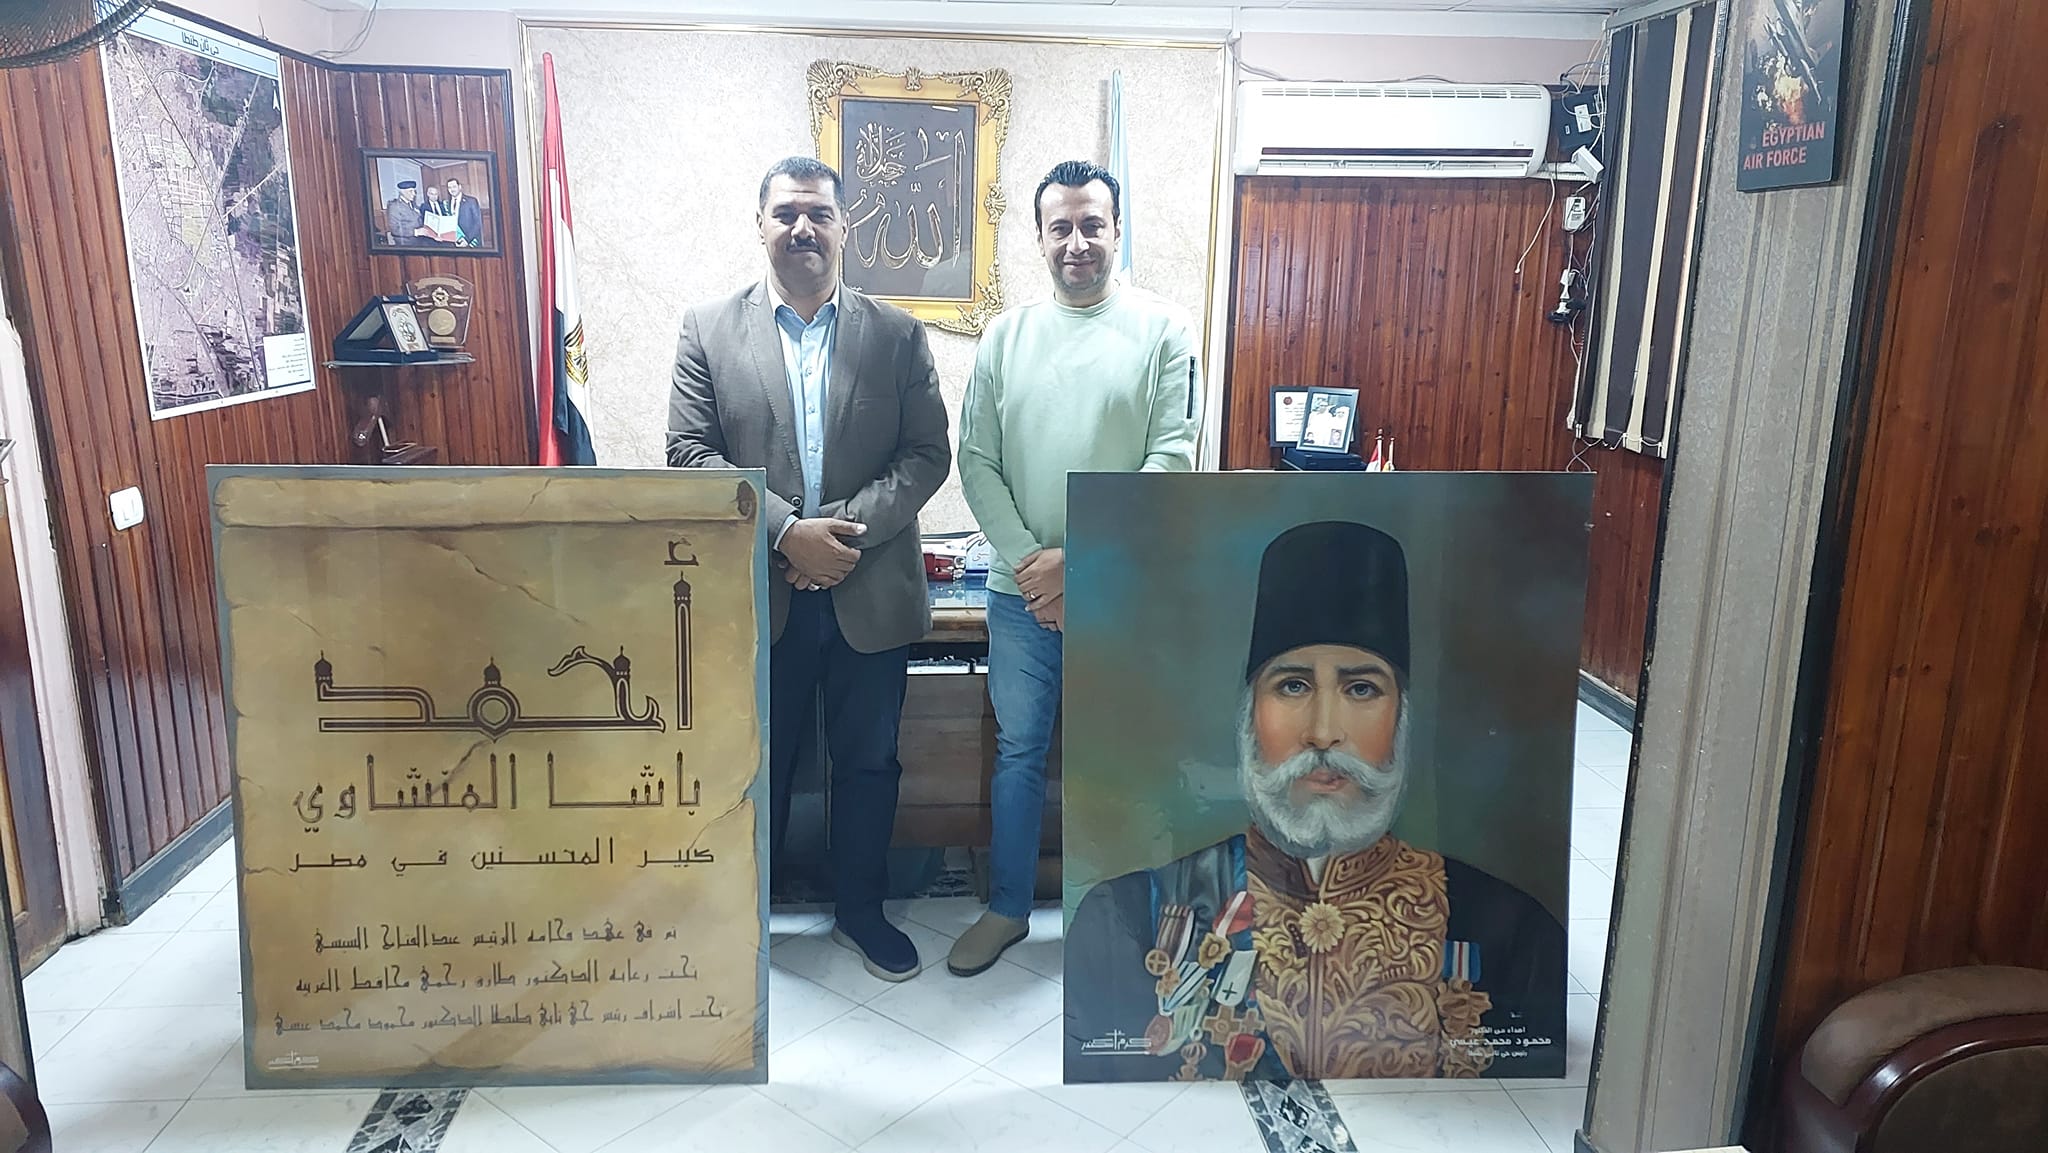 الفنان المسيحي يهدي رئيس حي ثان طنطا صورة لـ احمد باشا المنشاوي